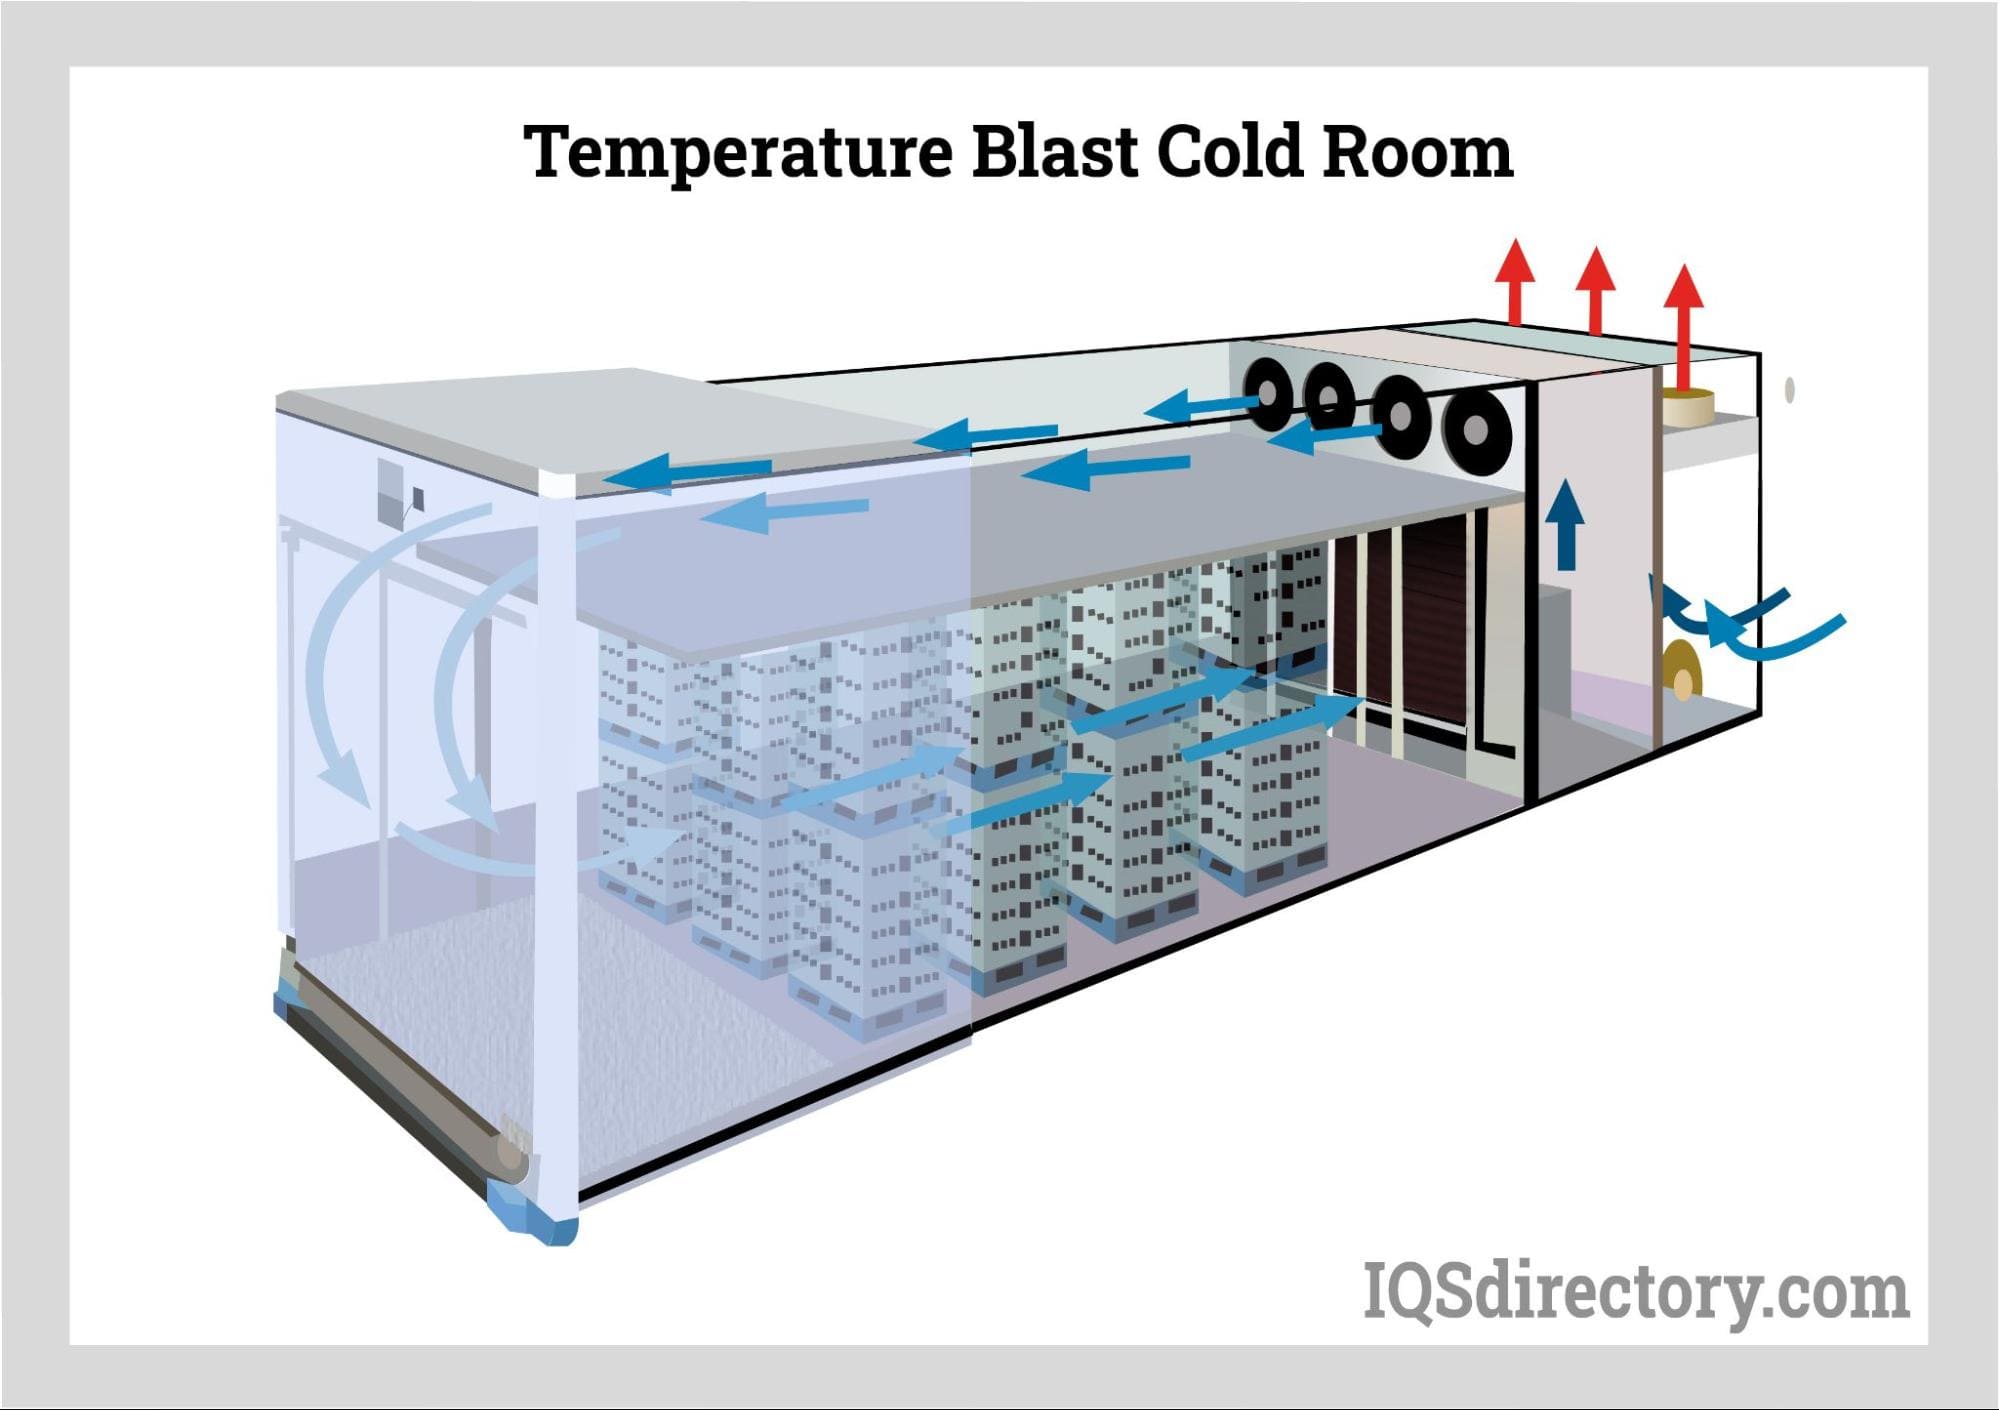 Temperature Blast Cold Room